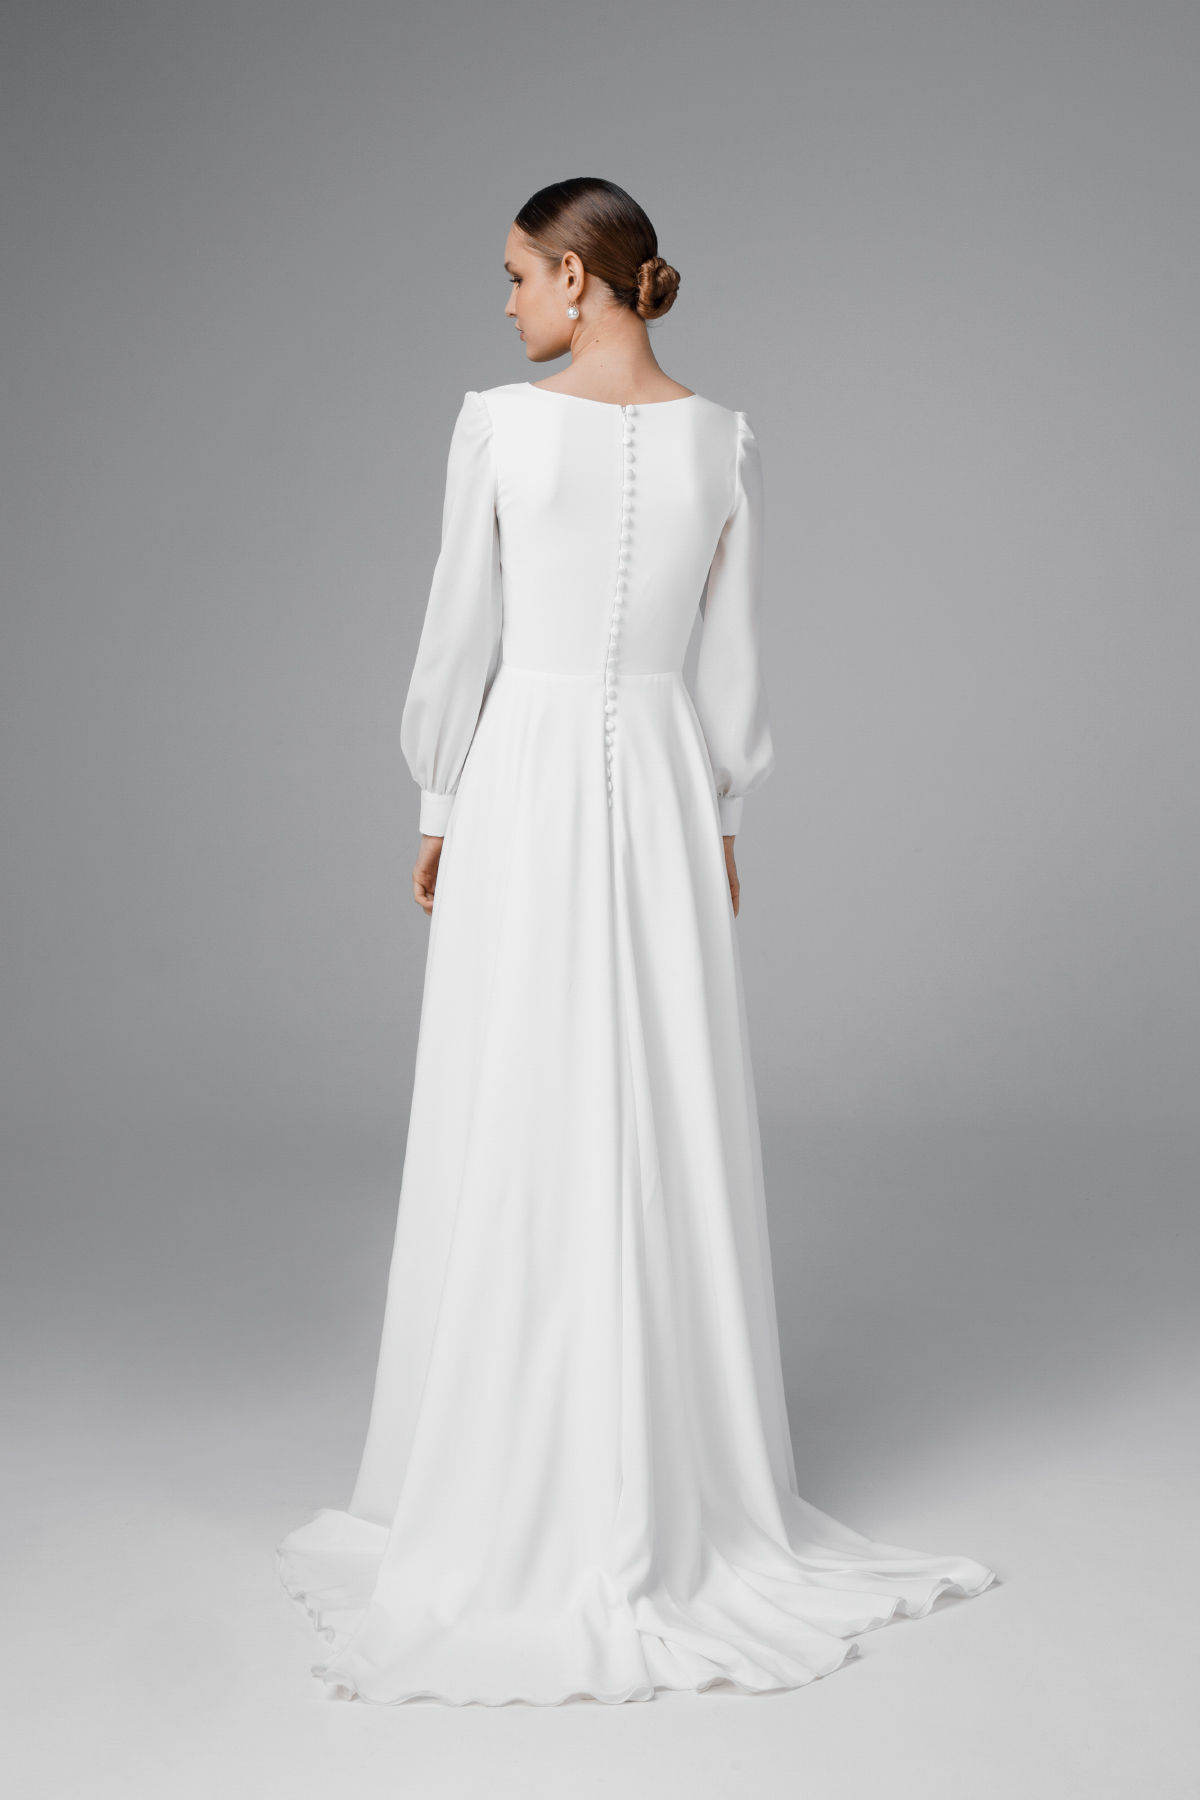 V-neck chiffon wedding dress with slit